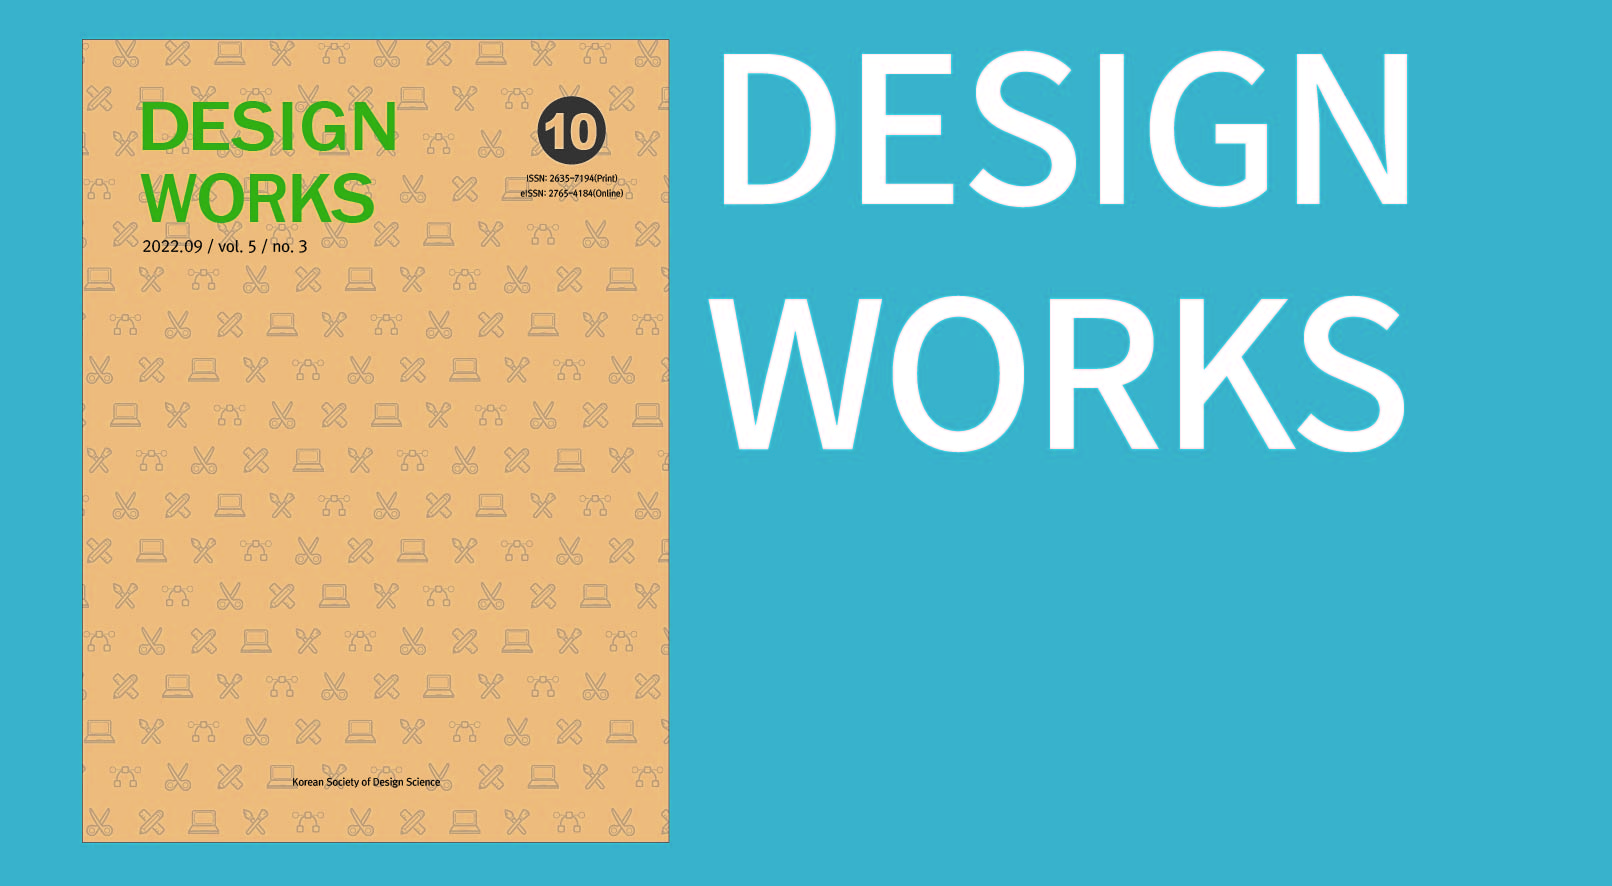 designworks